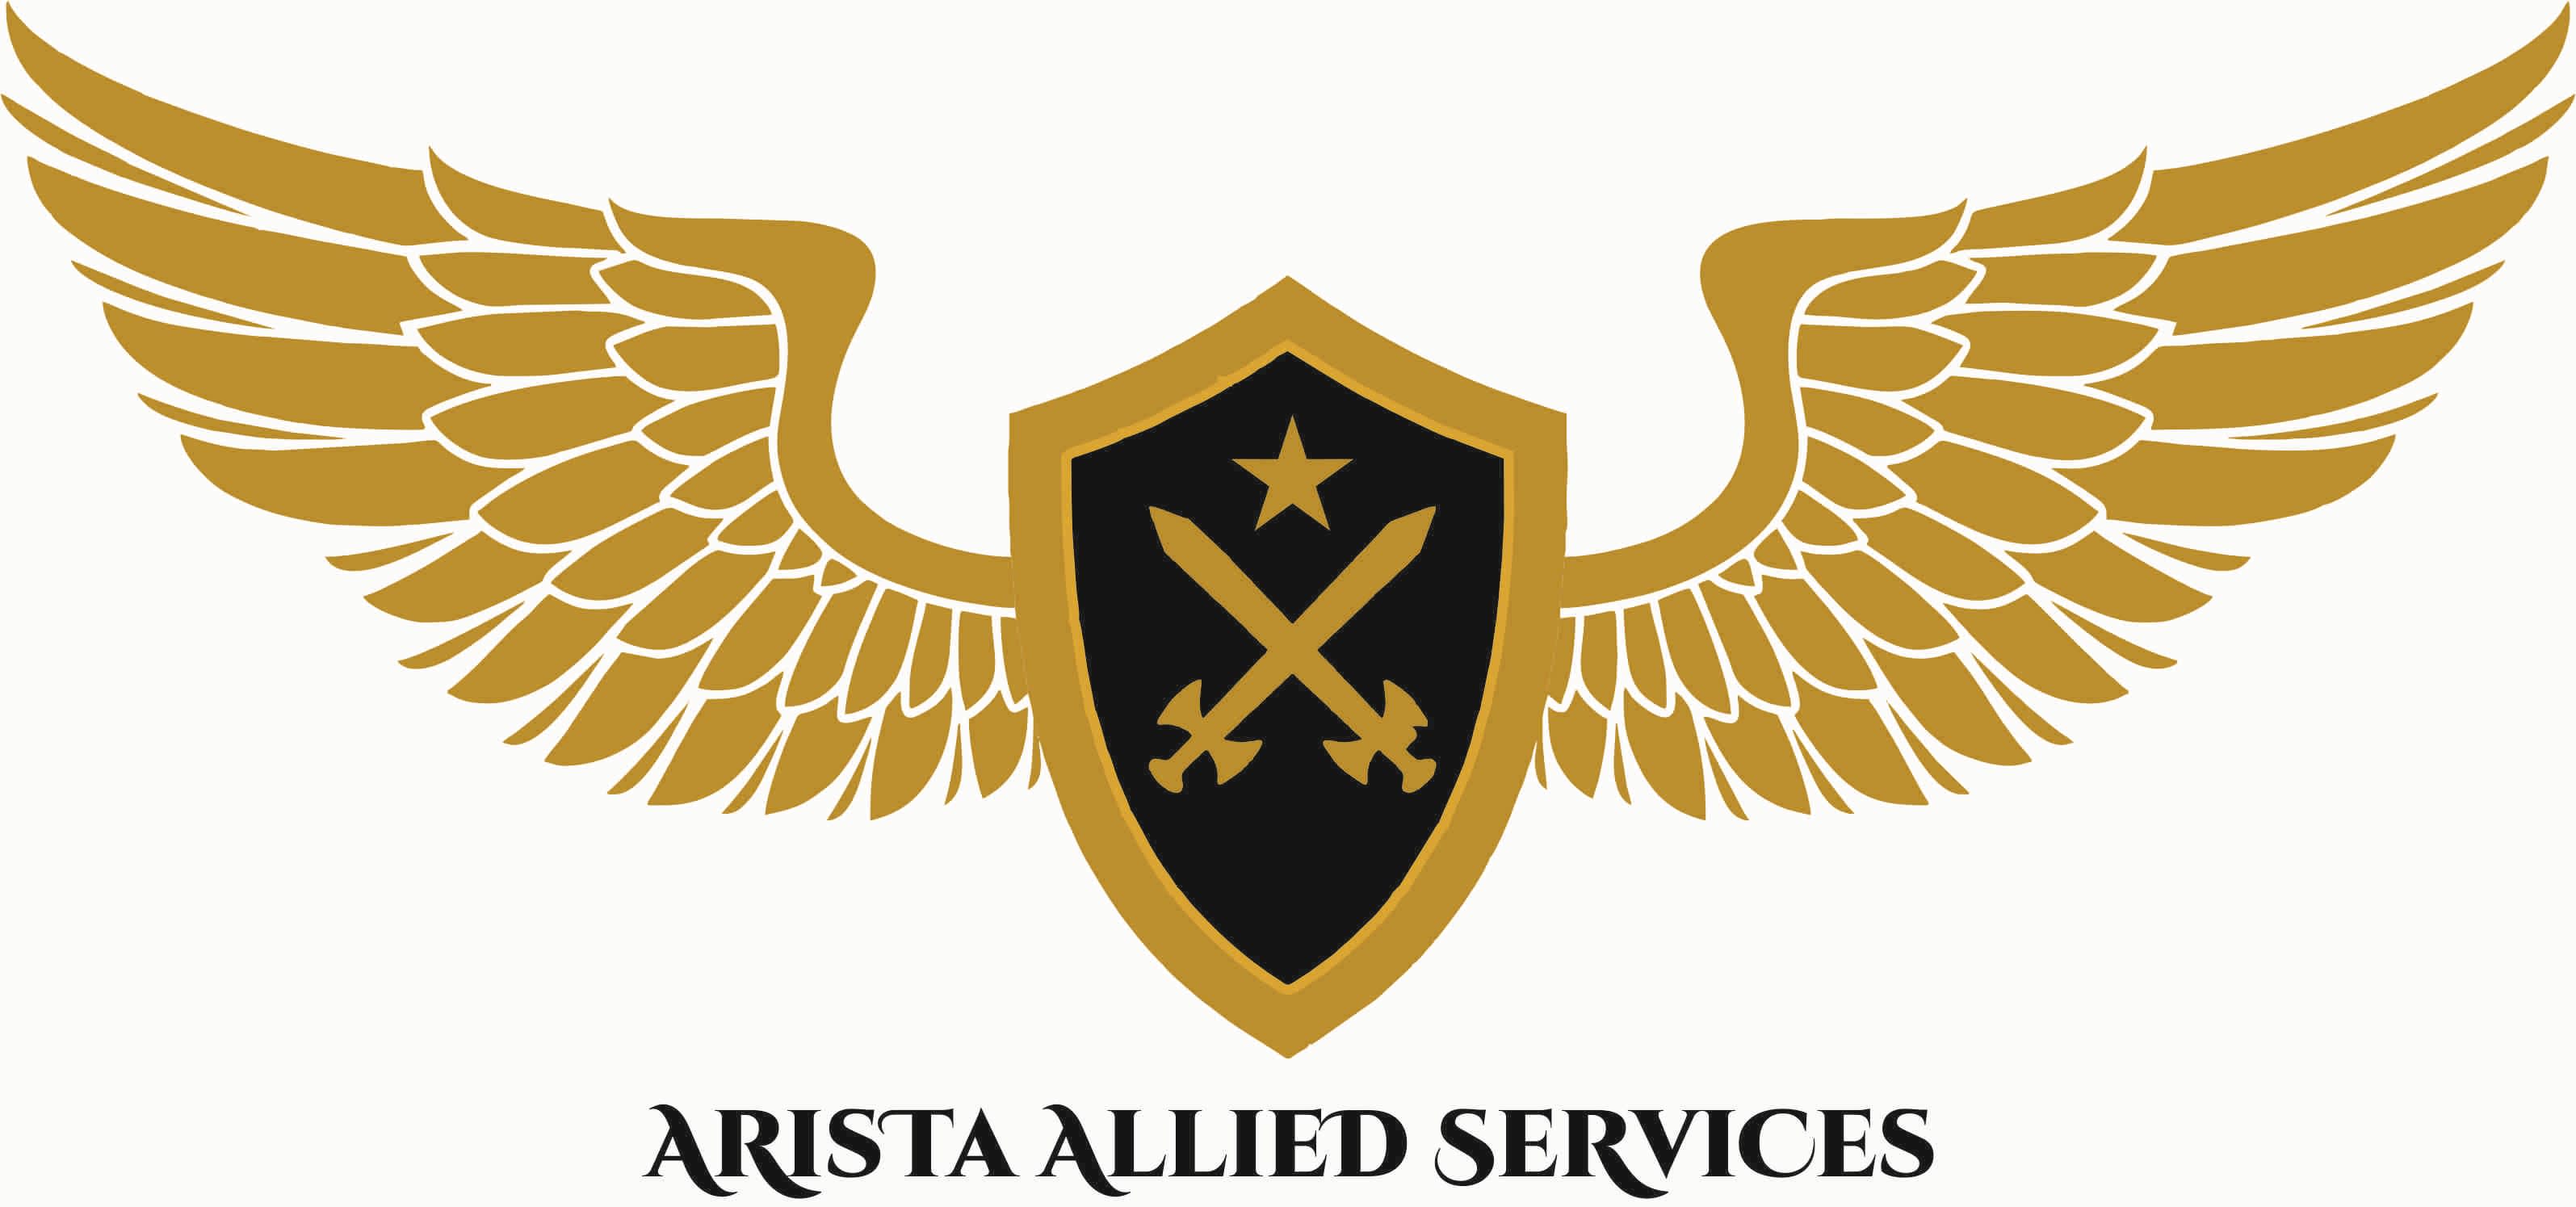 Arista Allied Services